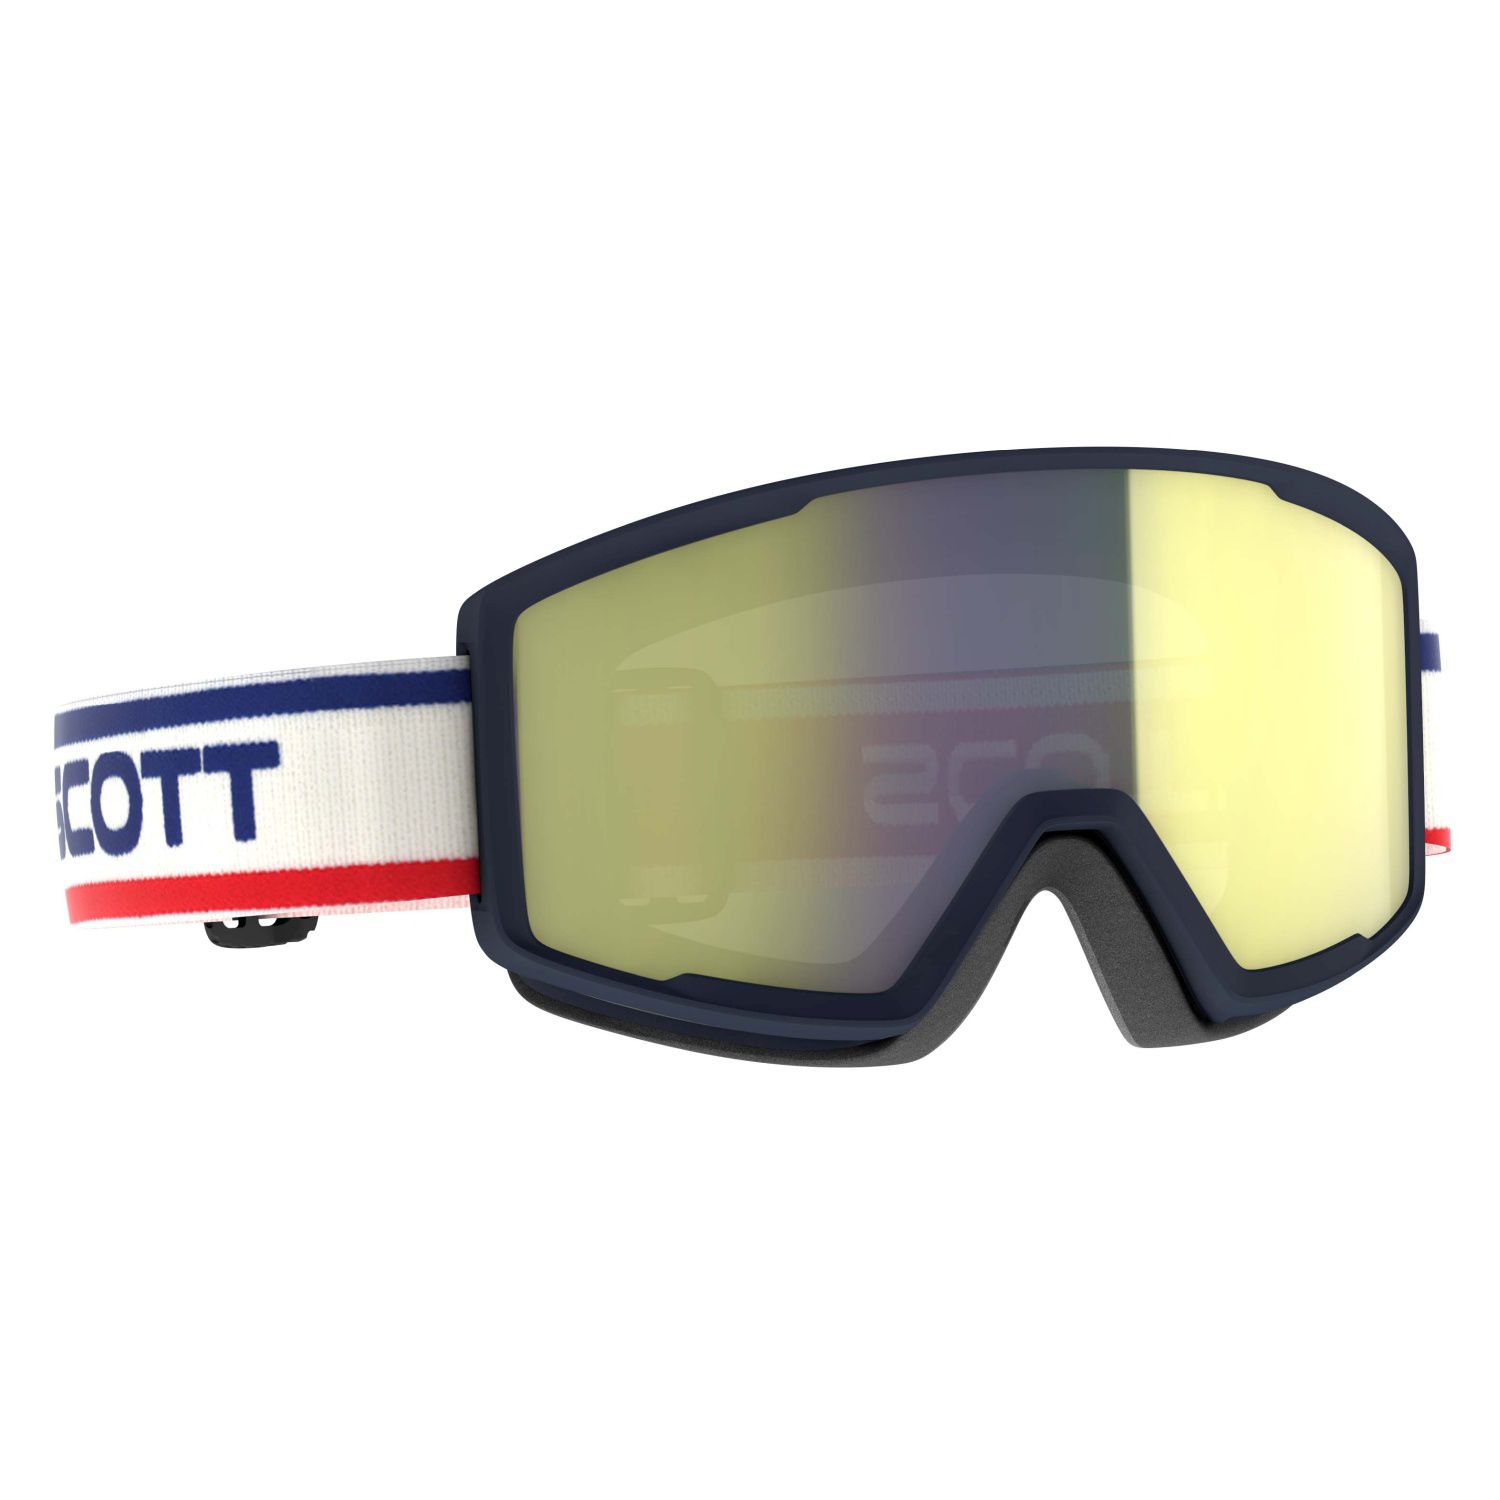 Máscara De Óculos Scott Ski Factor Pro Ampli Yellow